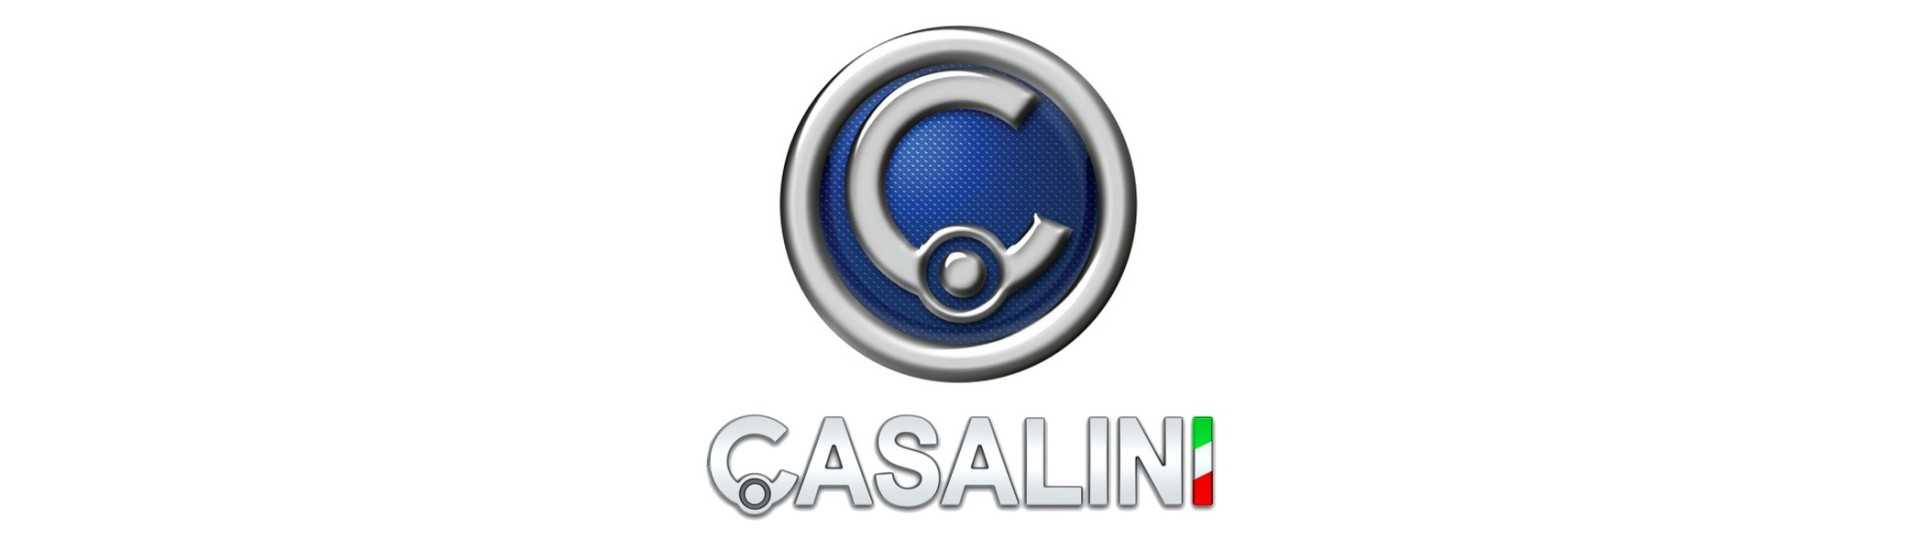 Paras käsijarrutus autoon ilman lupaa Casalini